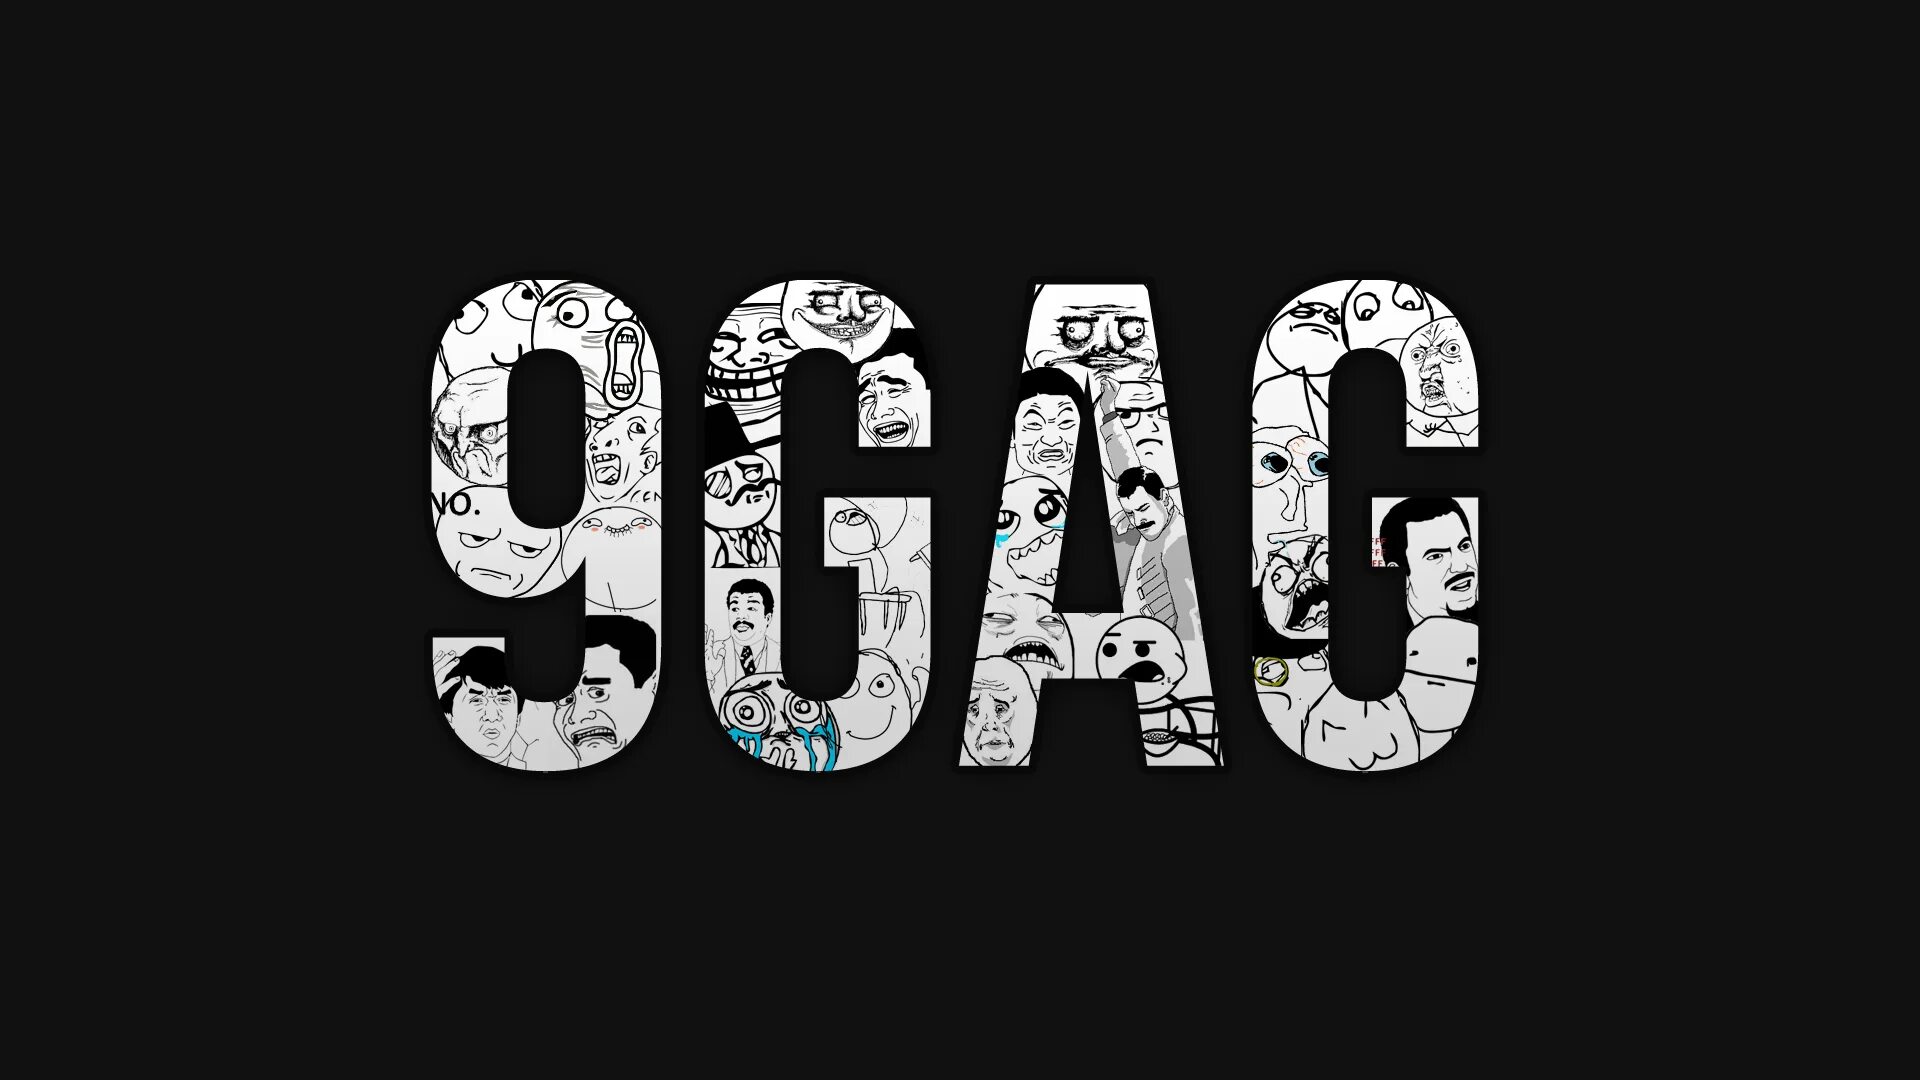 9gag com. 9gag. Логотип 9gag. 9 Гаг. Аватарки 9gag.